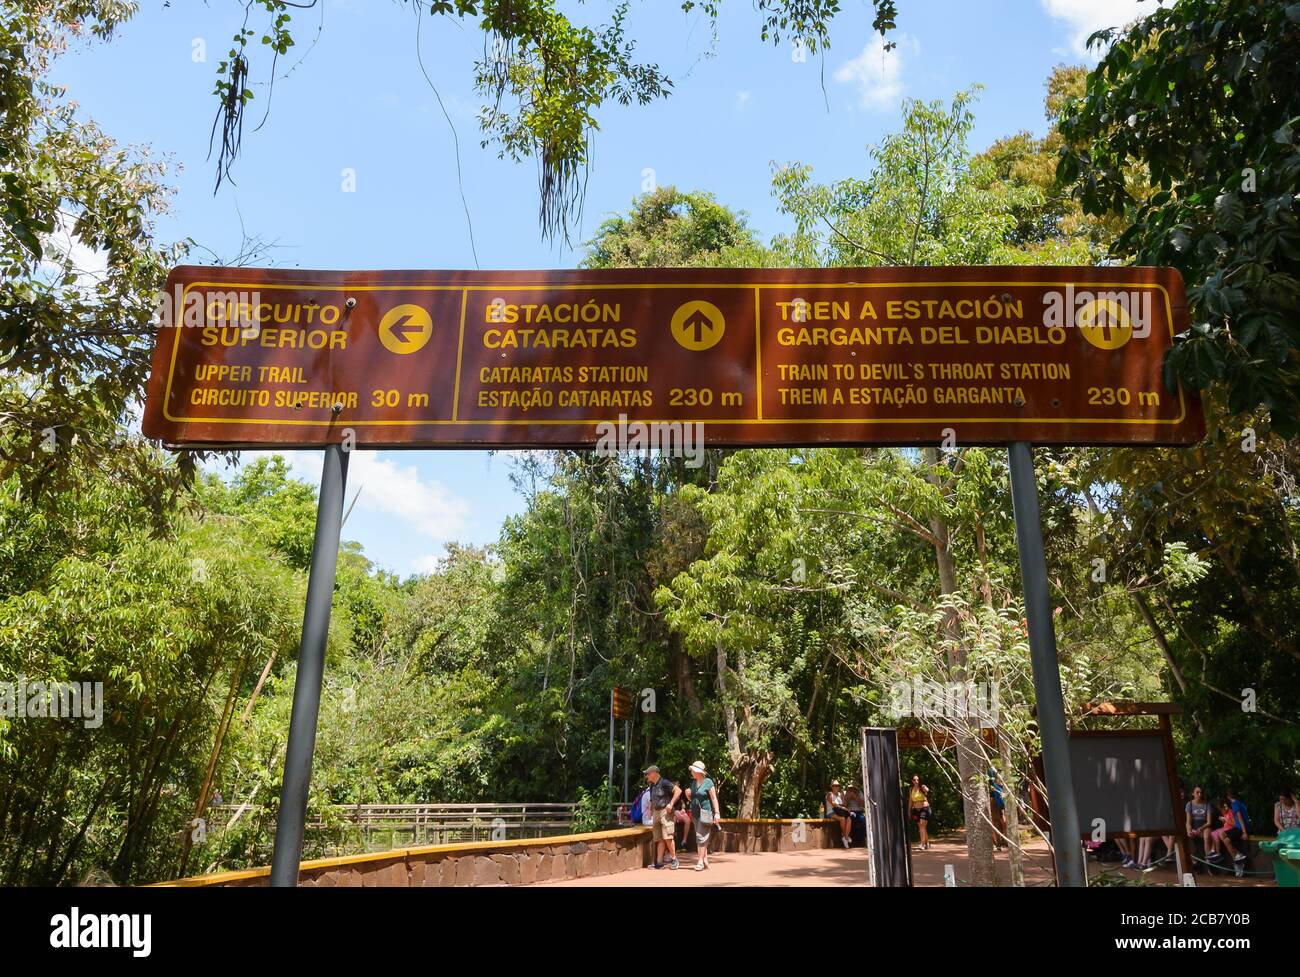 Panneau indiquant les directions dans le parc national d'Iguazú sur le côté de l'Argentine. Embarquez avec des indications pour les touristes visitant les chutes d'Iguassu / chutes d'Iguazu. Banque D'Images